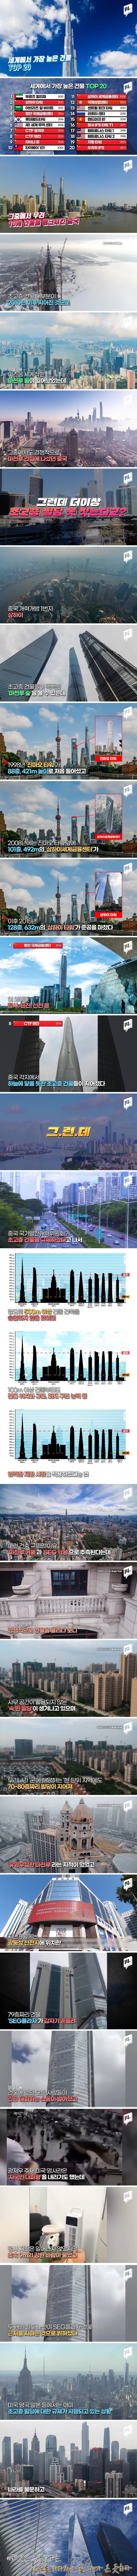 고층 빌딩 건축 규제 시작, 중국 500m 넘는 고층 건물 건설 금지.jpg